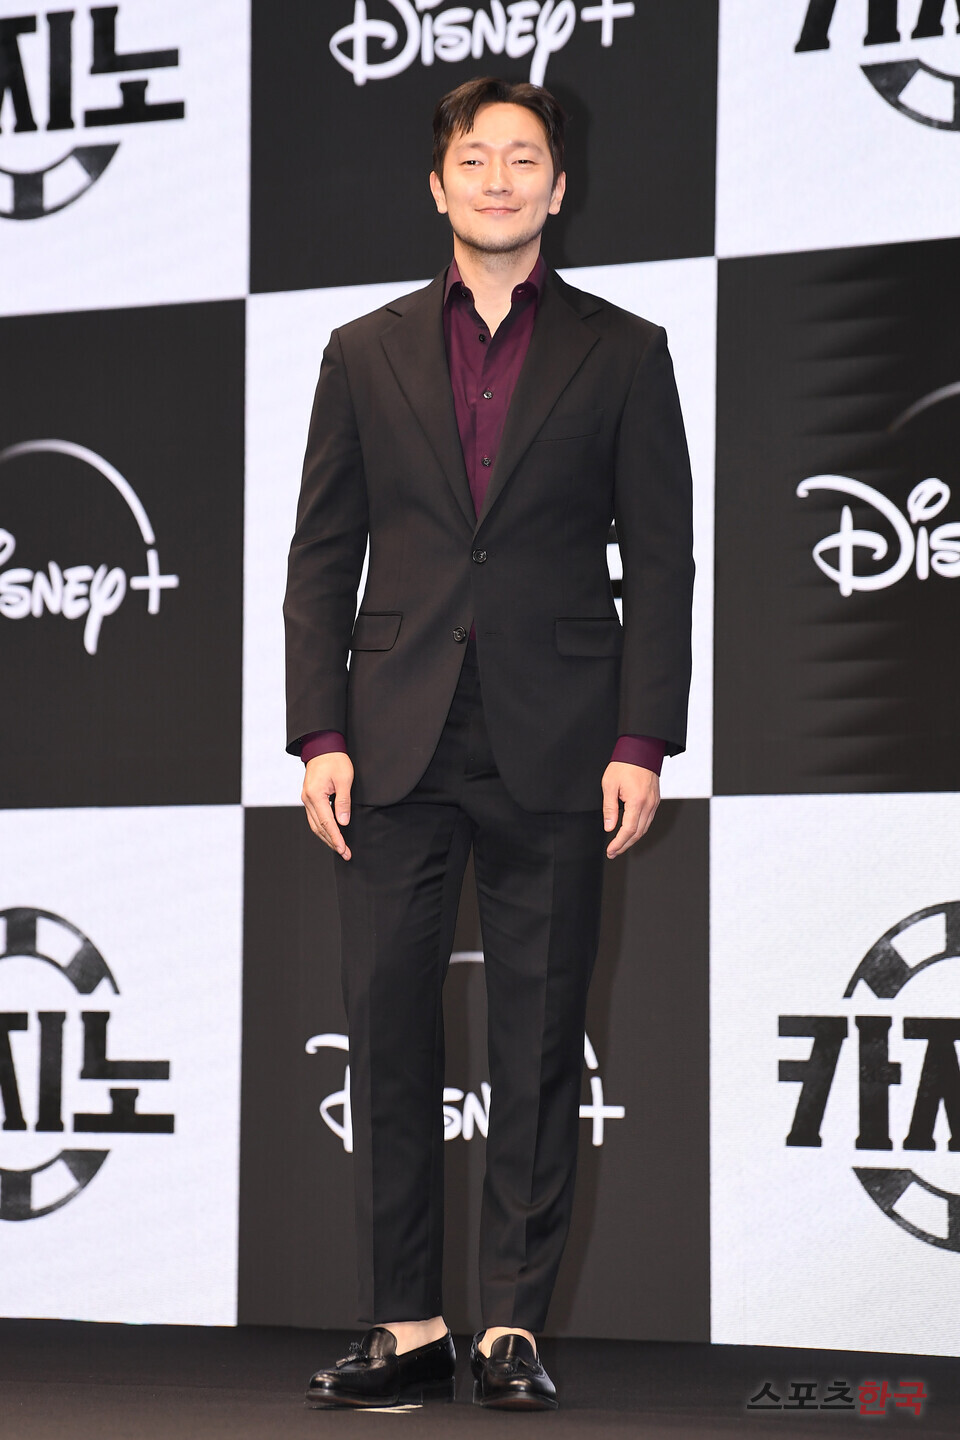 디즈니+의 오리지널 시리즈 '카지노' 제작발표회에 참석한 배우 손석구. ⓒ이혜영 기자 lhy@hankooki.com